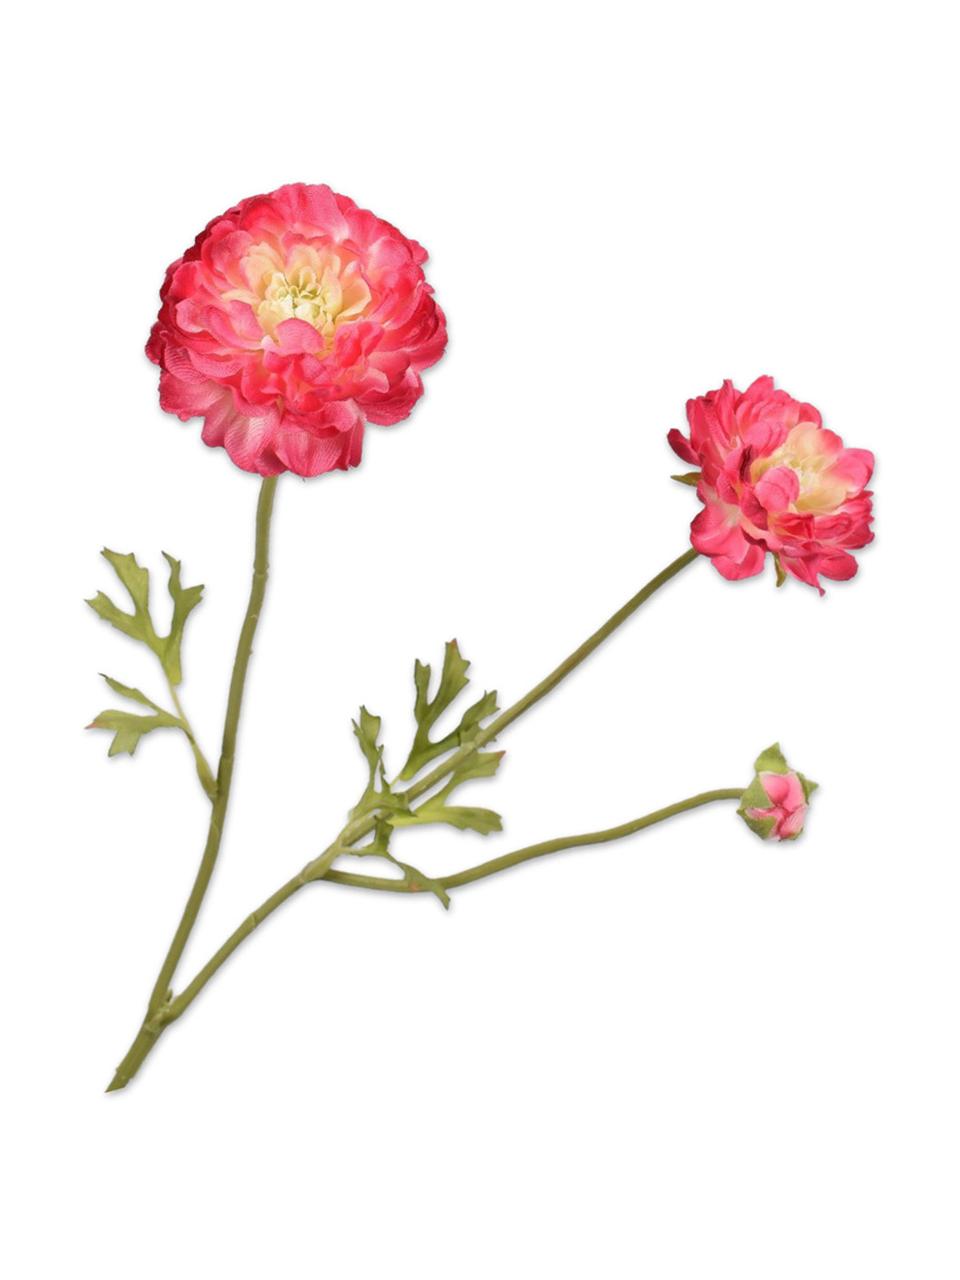 Kvetinová dekorácia- iskerník, 2 ks, Plast, kovový drôt, Ružová, D 54 cm